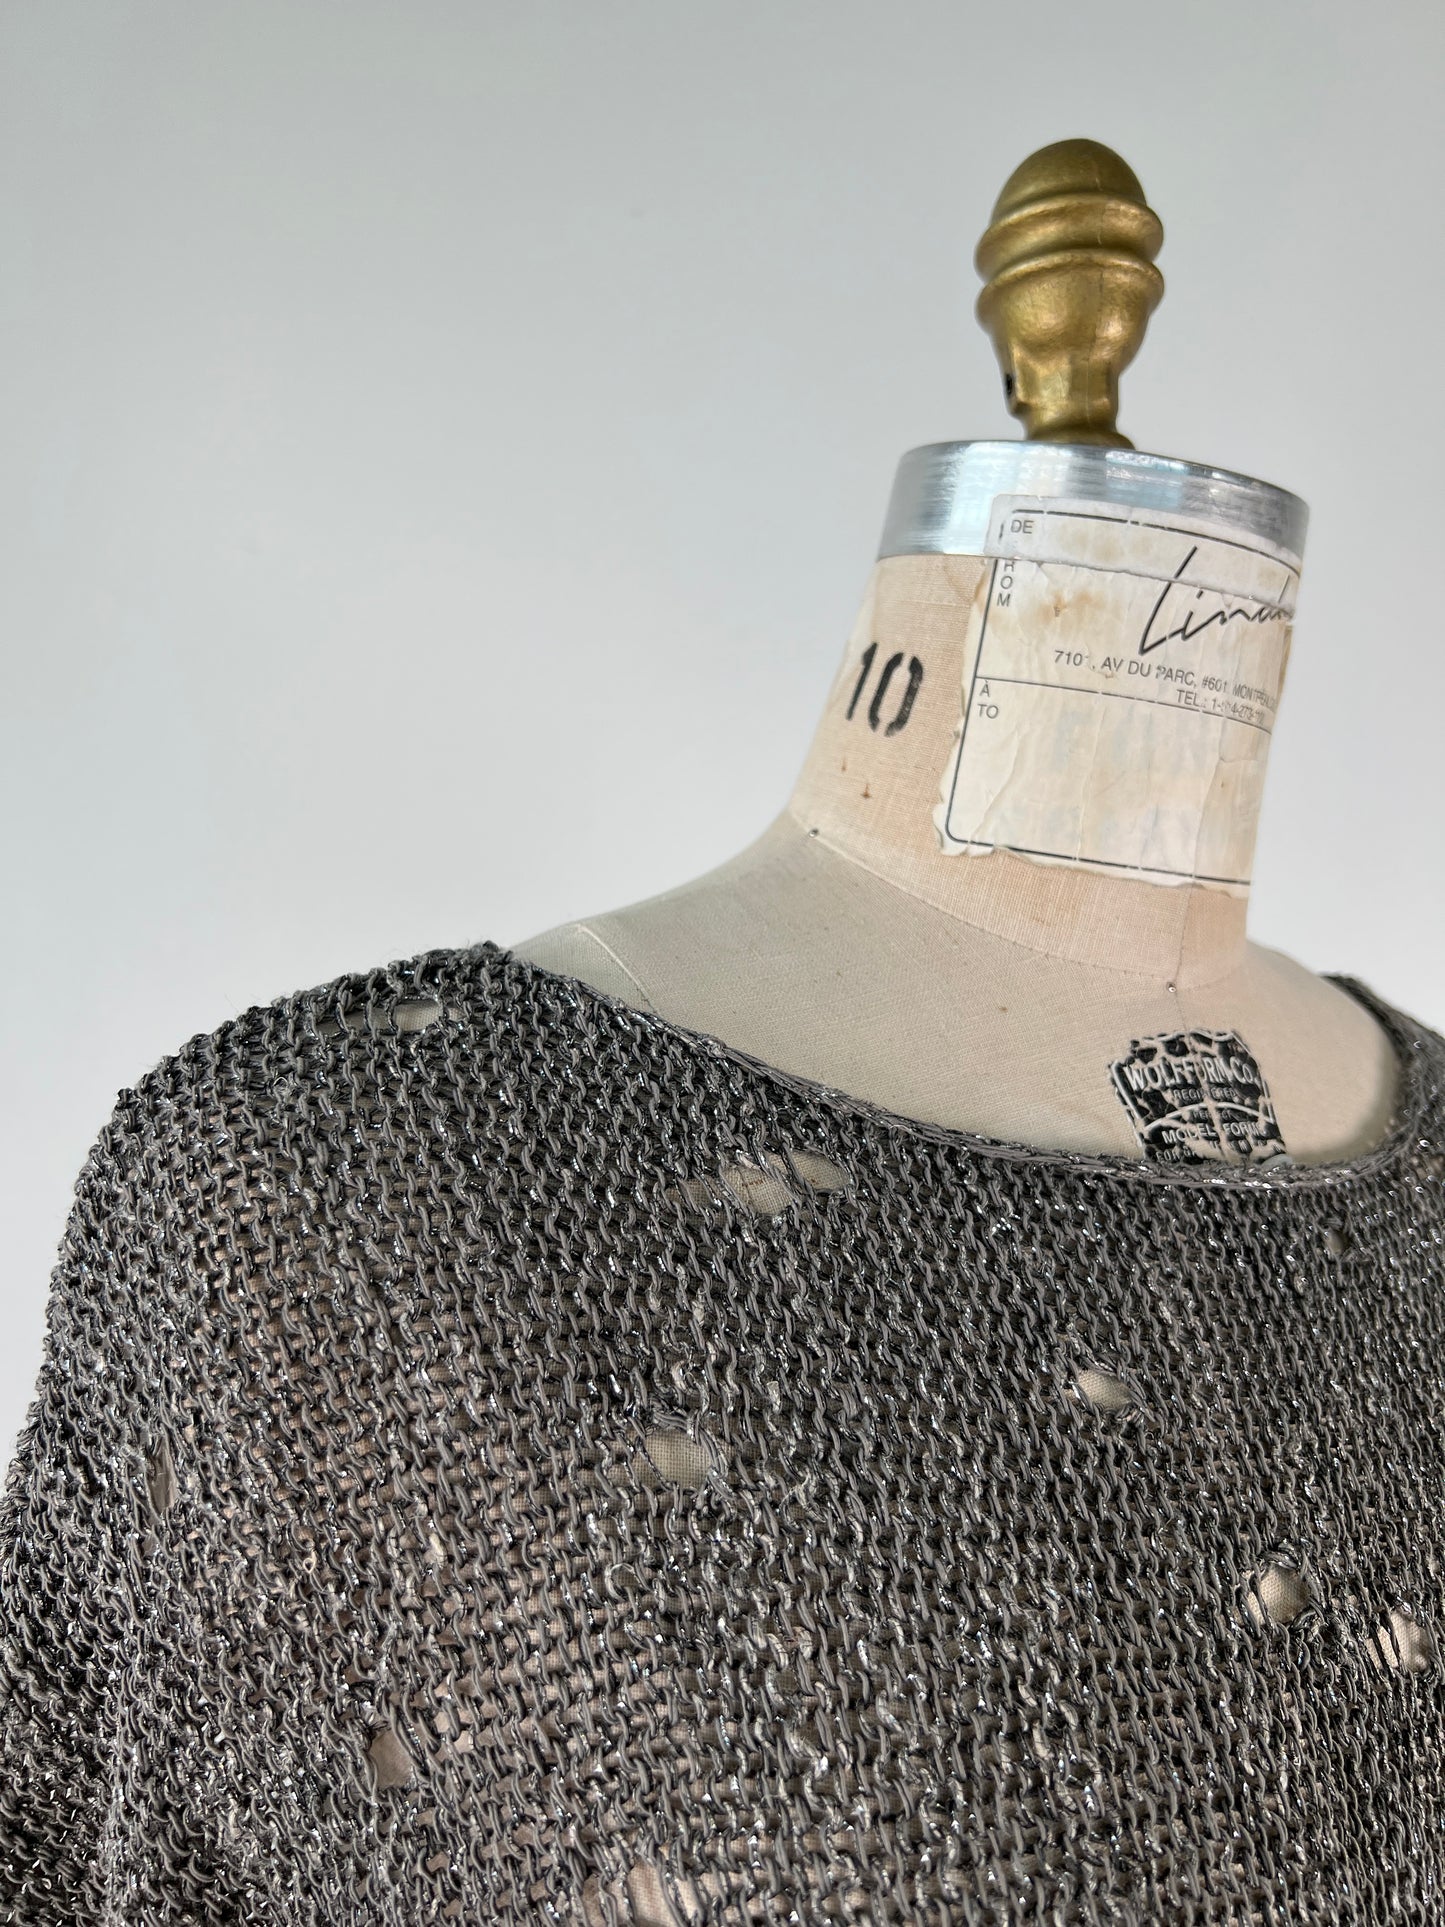 Chandail en tricot gris argenté lavable (XS à XL)